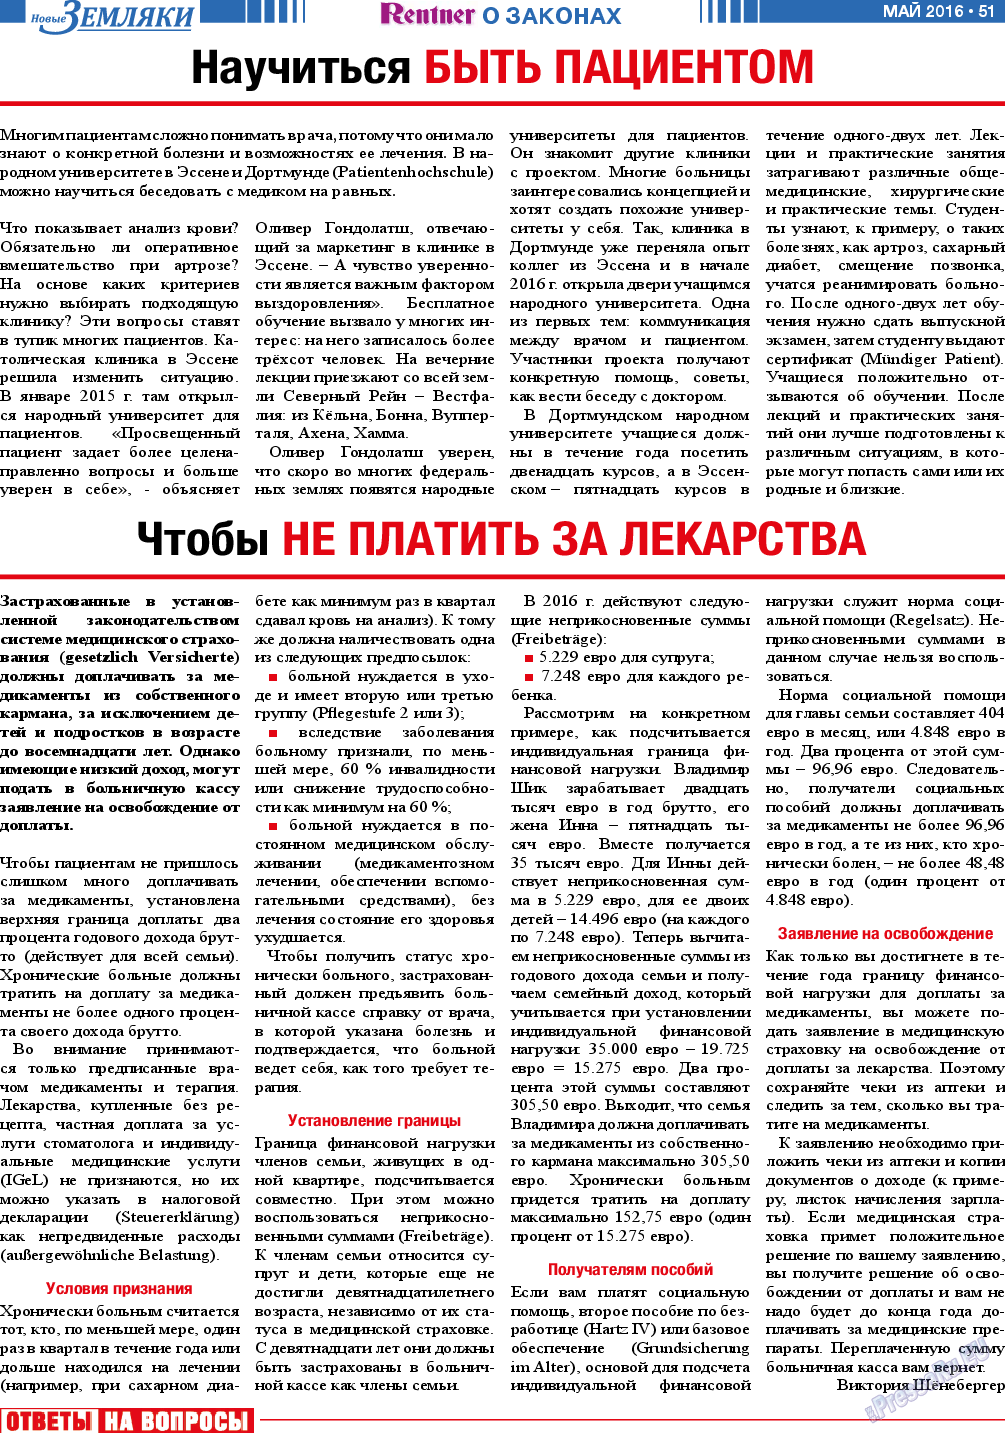 Новые Земляки, газета. 2016 №5 стр.51